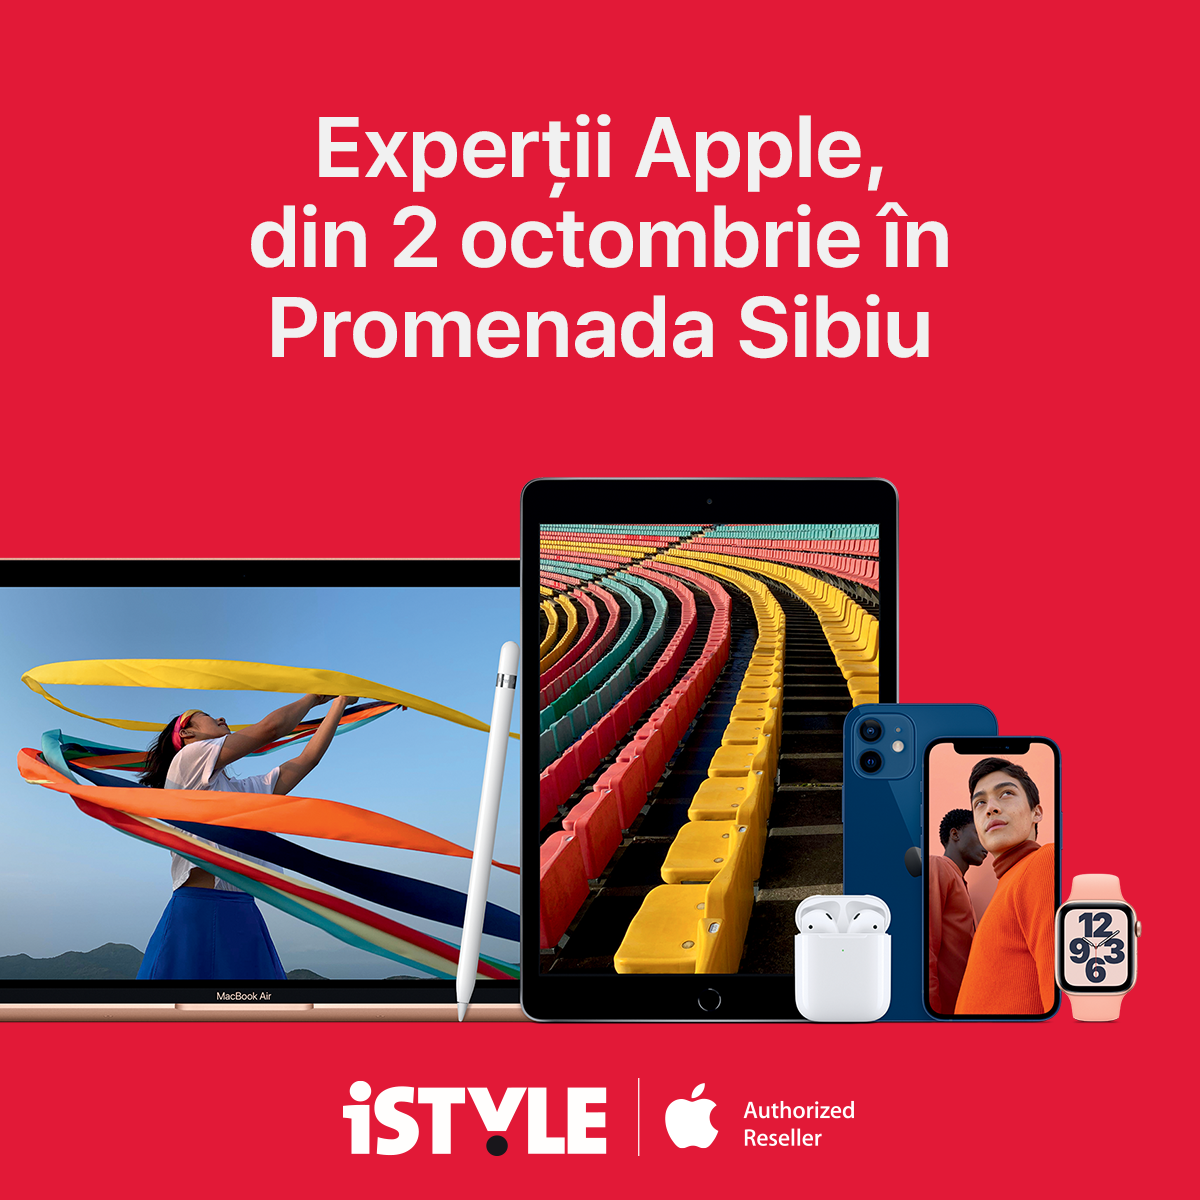 Promenada Sibiu anunță deschiderea primului magazin iSTYLE din regiune începând cu 2 octombrie